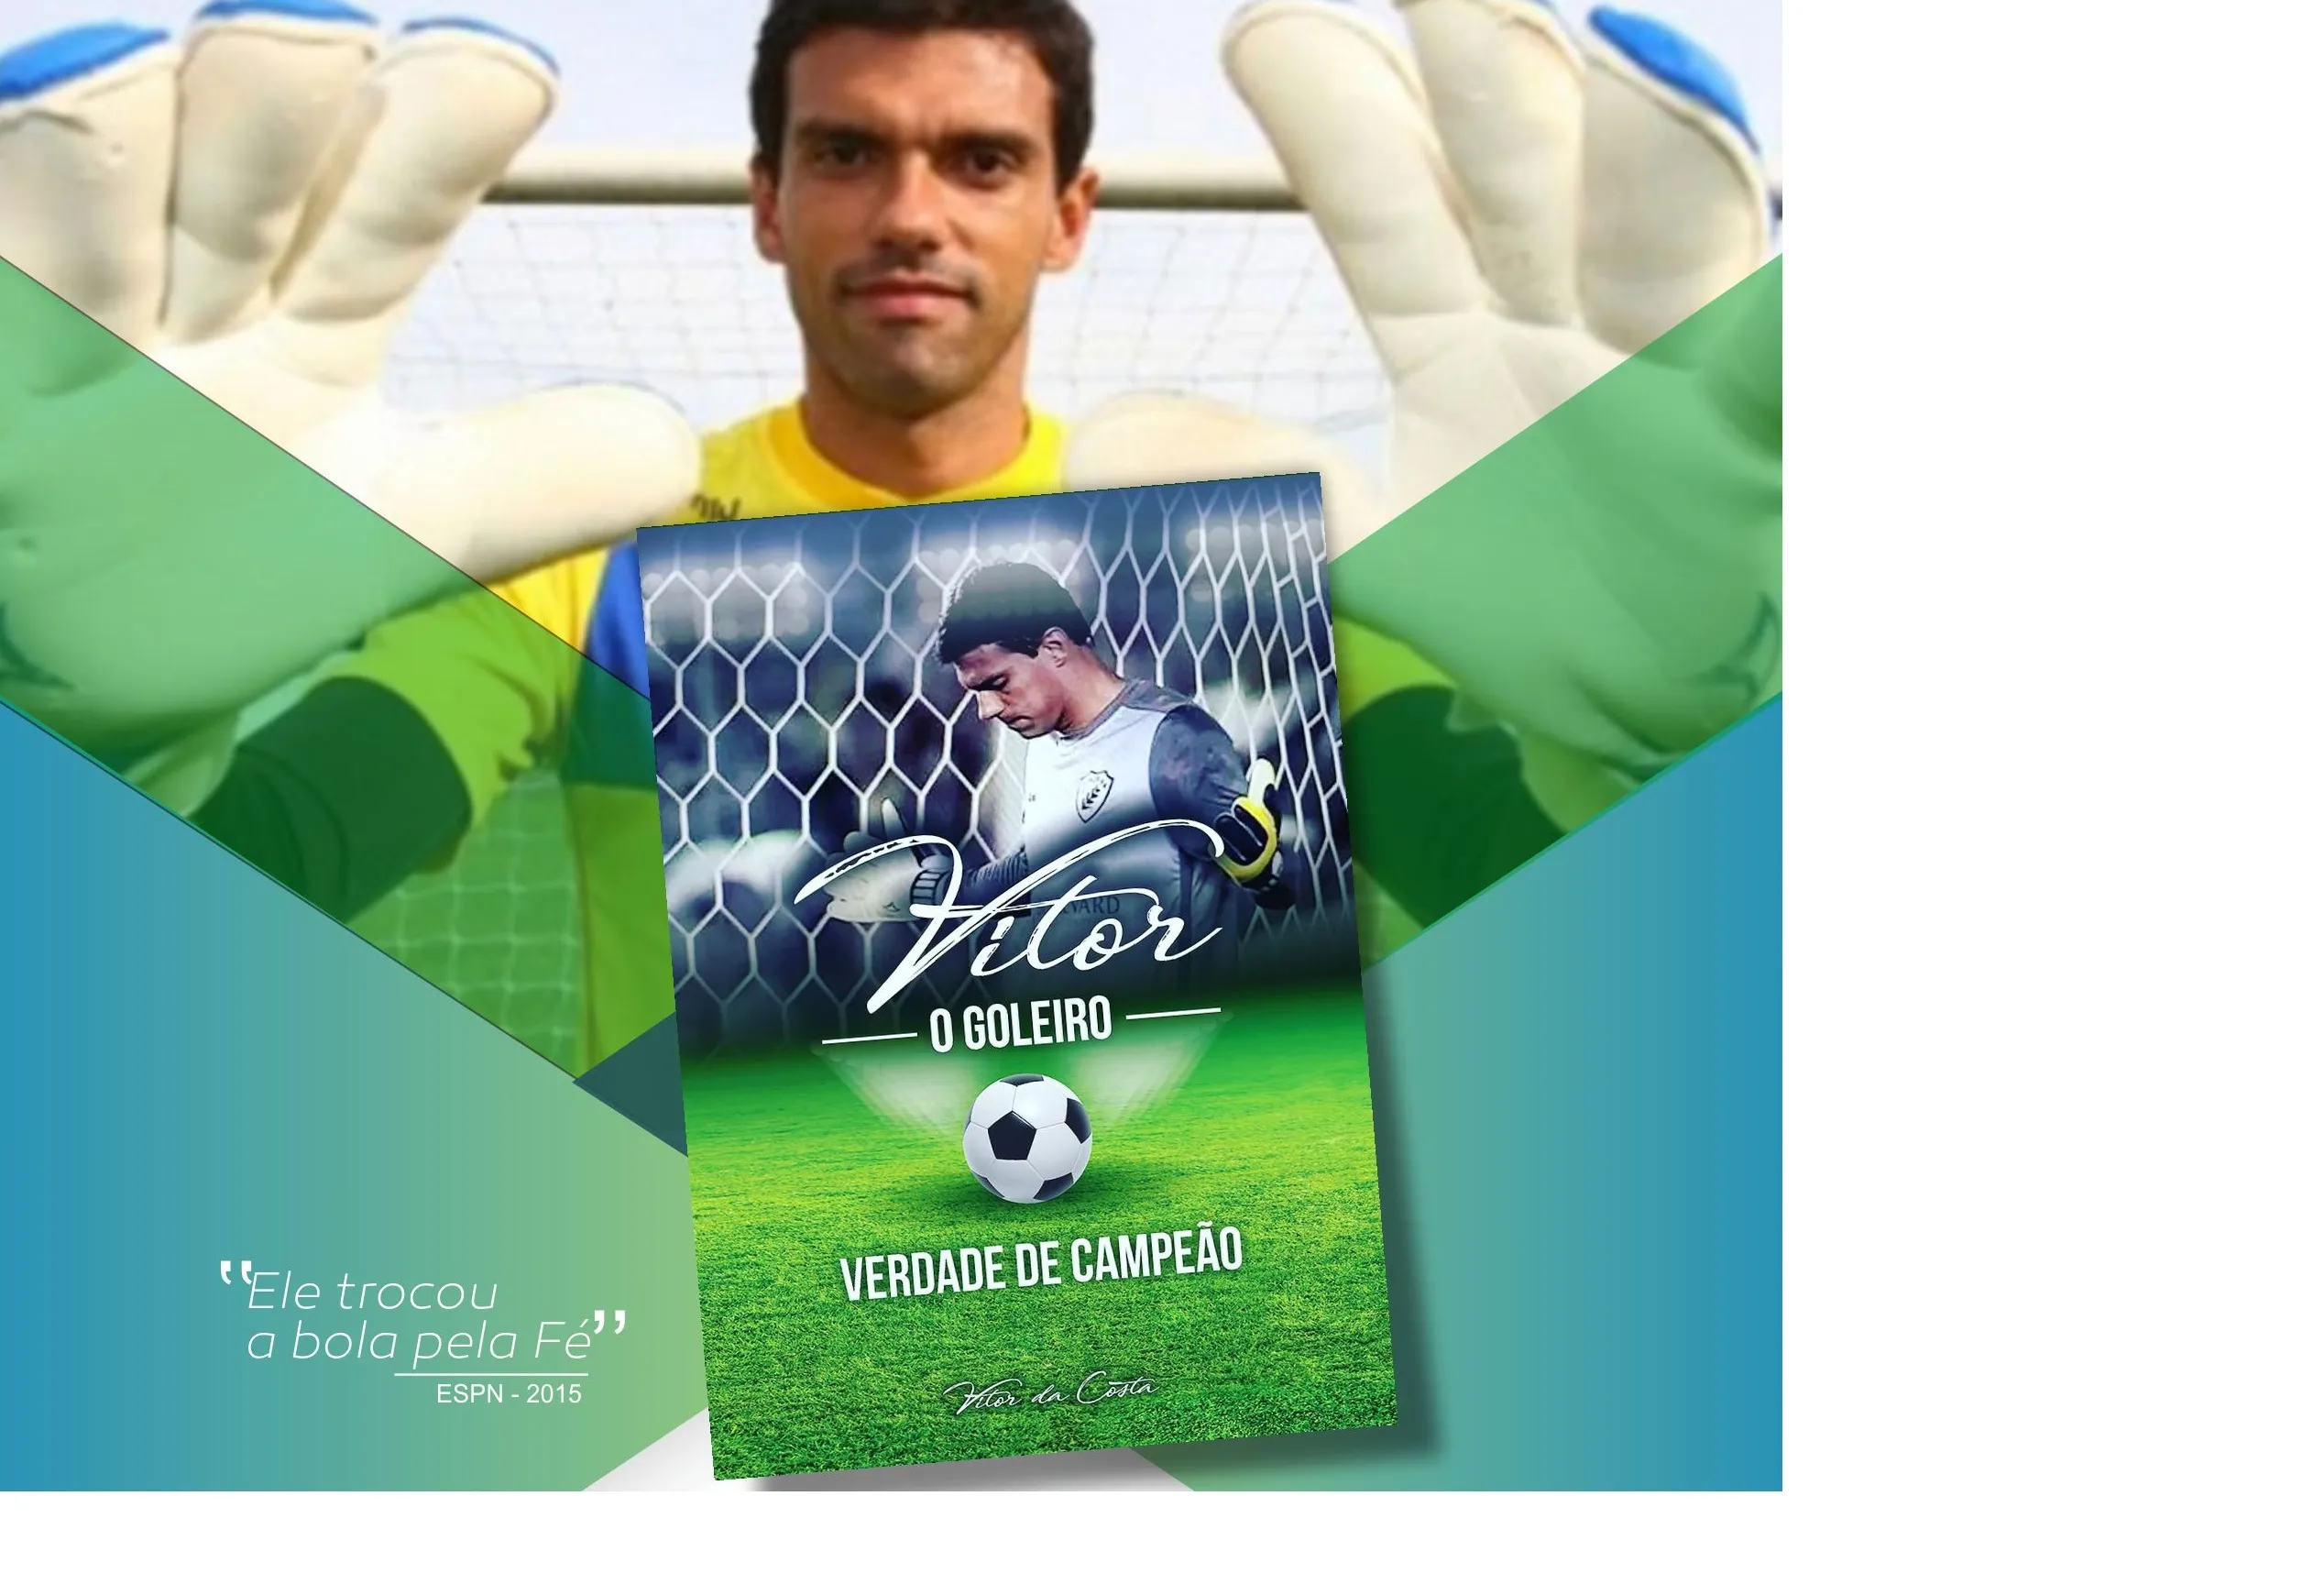 Ex-goleiro do Arapongas que largou futebol pela religião lança livro 